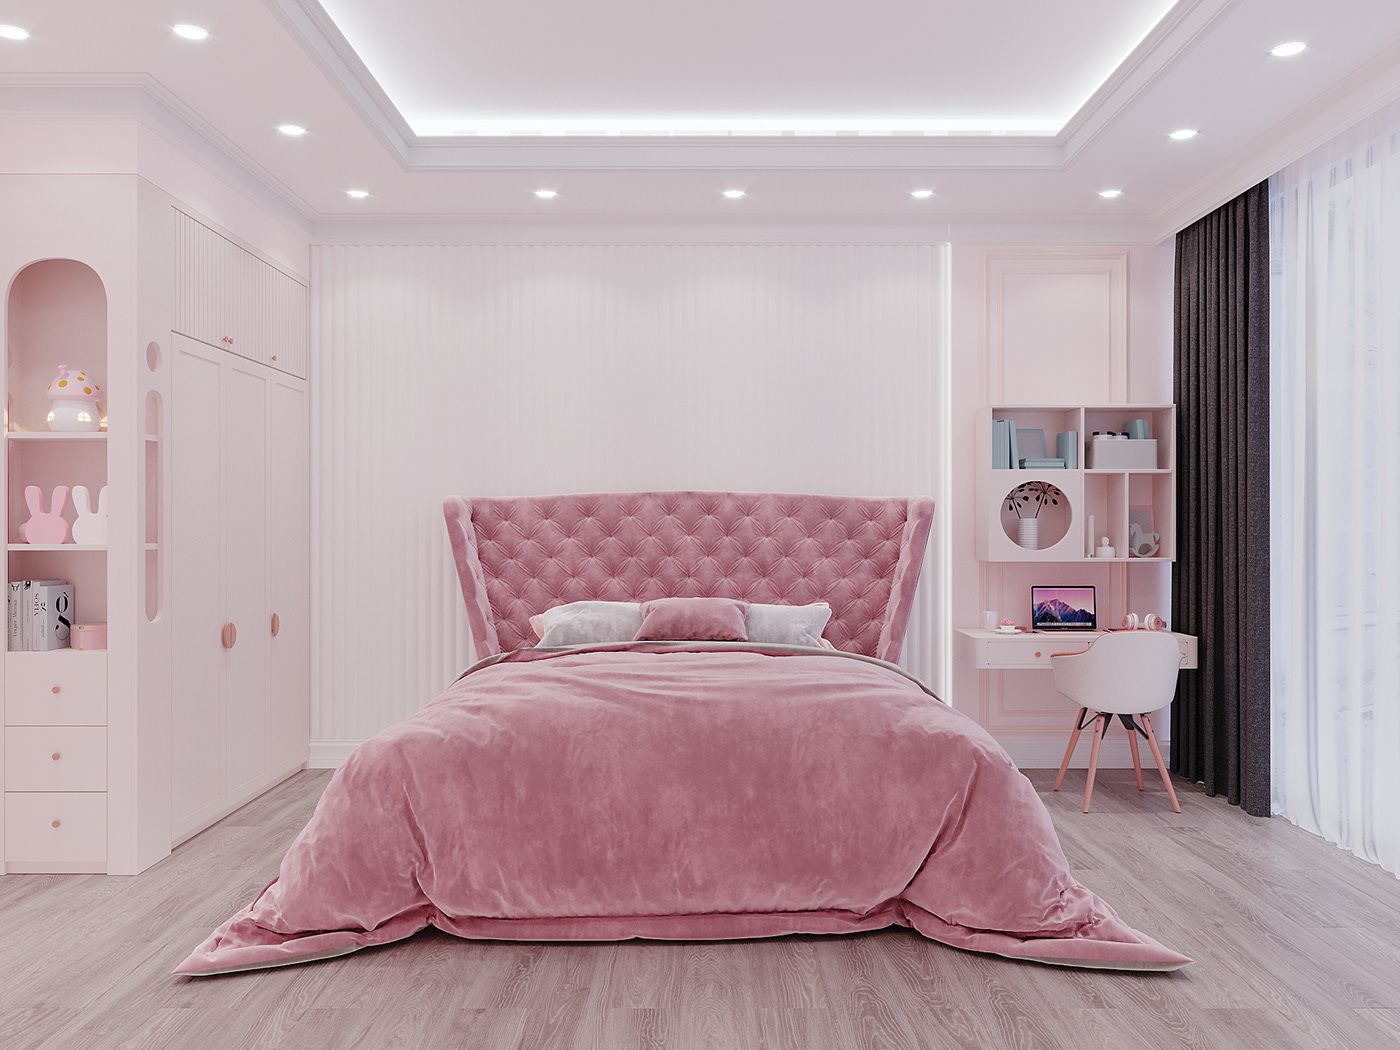 Mẫu phòng ngủ tân cổ điển sử dụng nội thất màu hồng vô cùng nữ tính